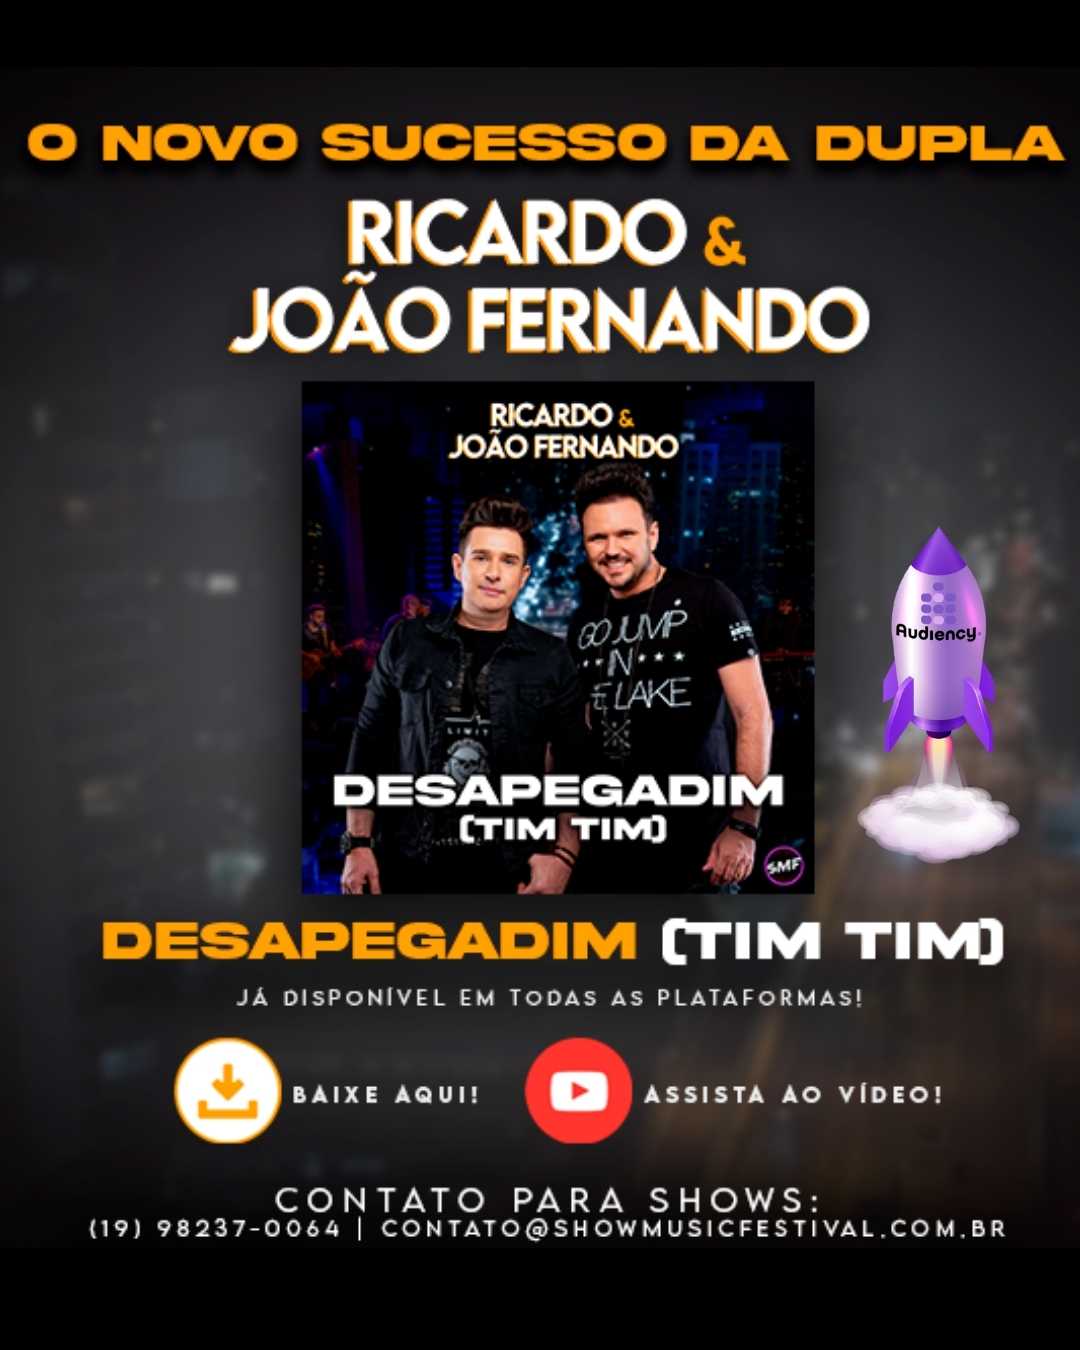 Ricardo & João Fernando lançam "Desapegadim